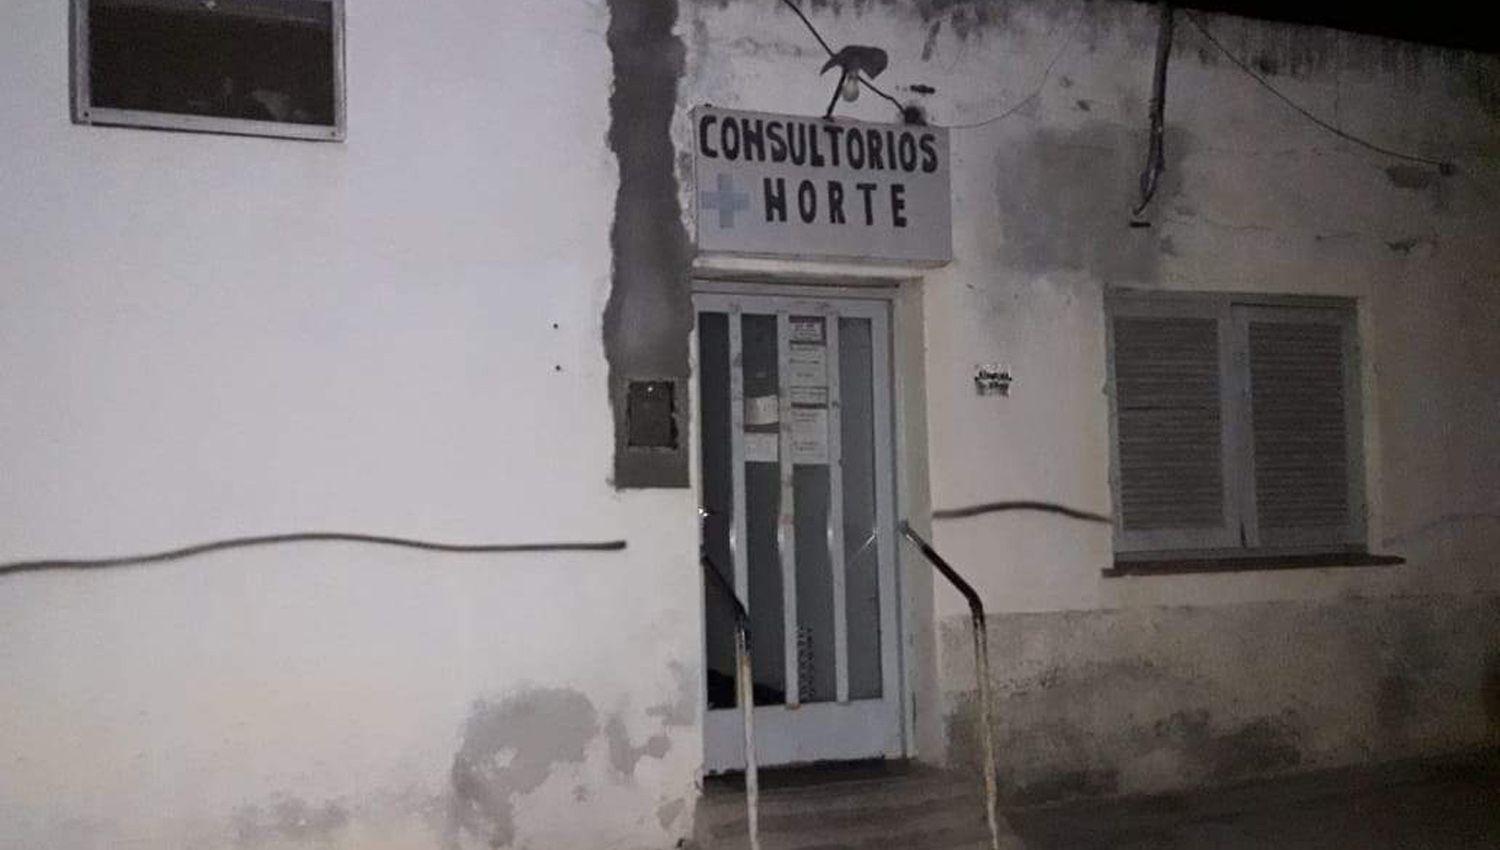 El médico cordobés llevaba varios años atendiendo a pacientes en la ciudad santiagueña